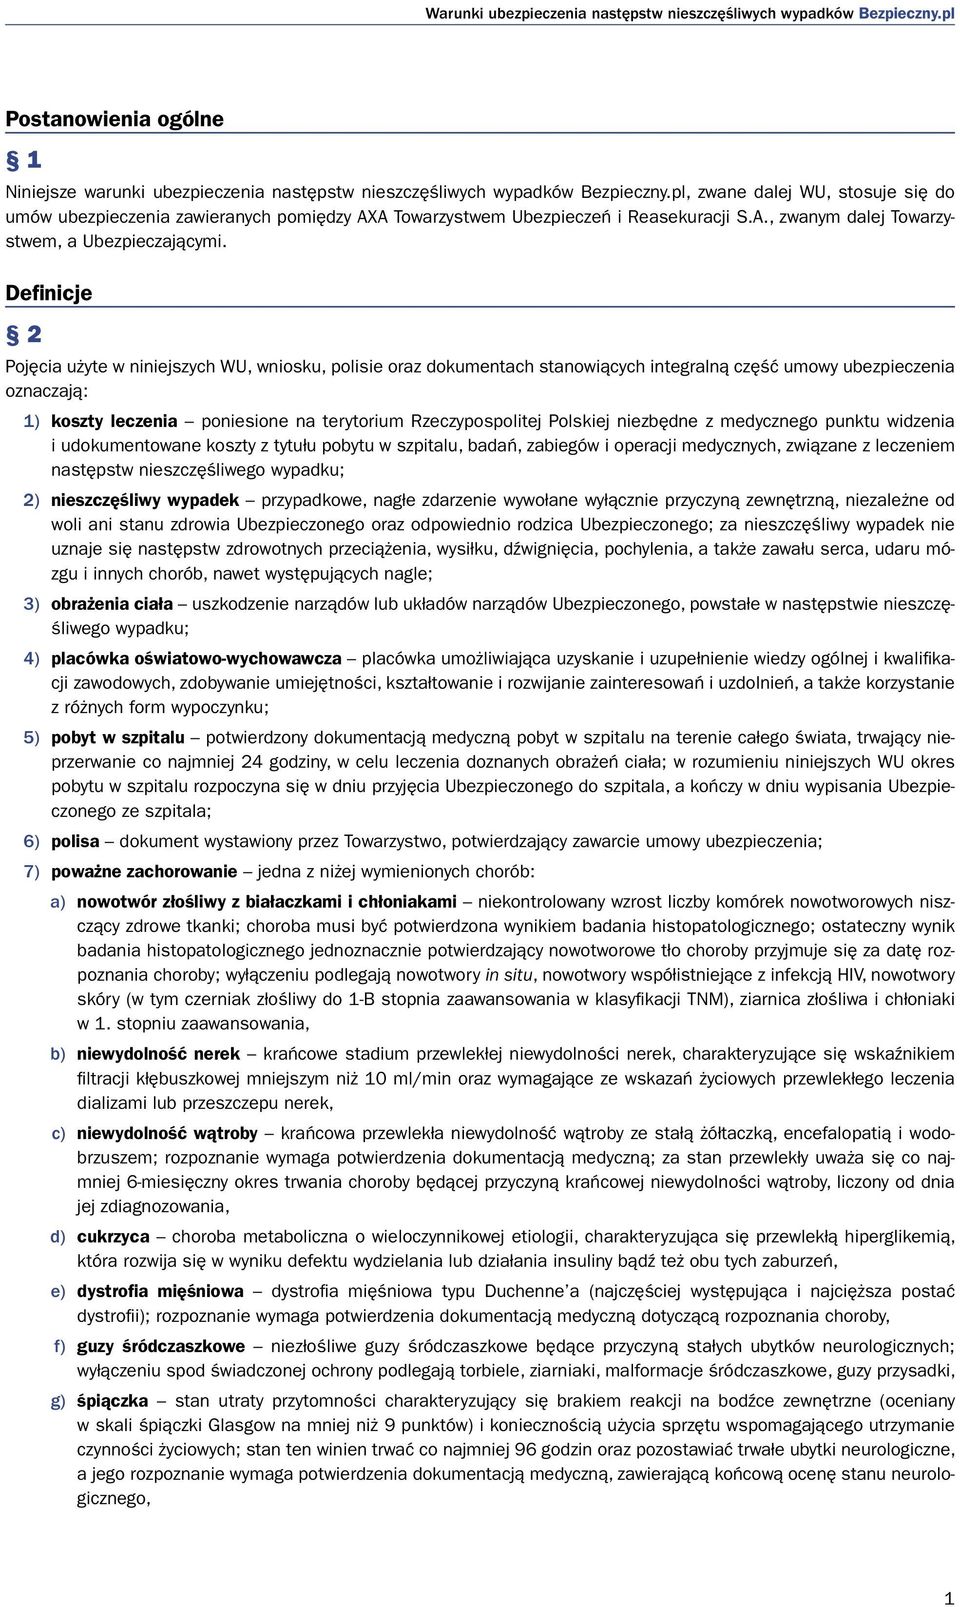 Definicje 2 Pojęcia użyte w niniejszych WU, wniosku, polisie oraz dokumentach stanowiących integralną część umowy ubezpieczenia oznaczają: 1) koszty leczenia poniesione na terytorium Rzeczypospolitej